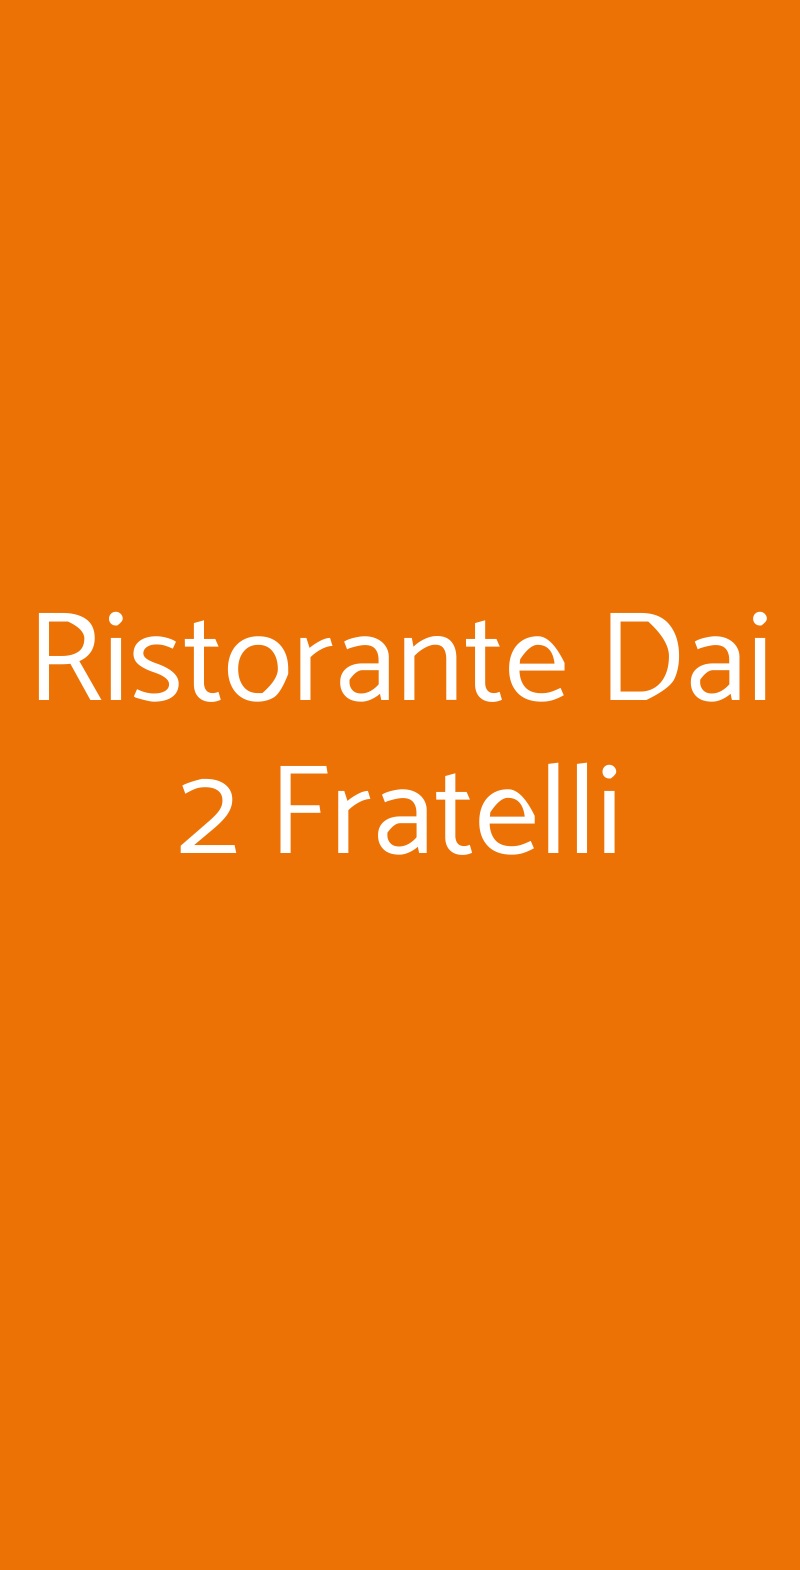 Ristorante Dai 2 Fratelli Milano menù 1 pagina